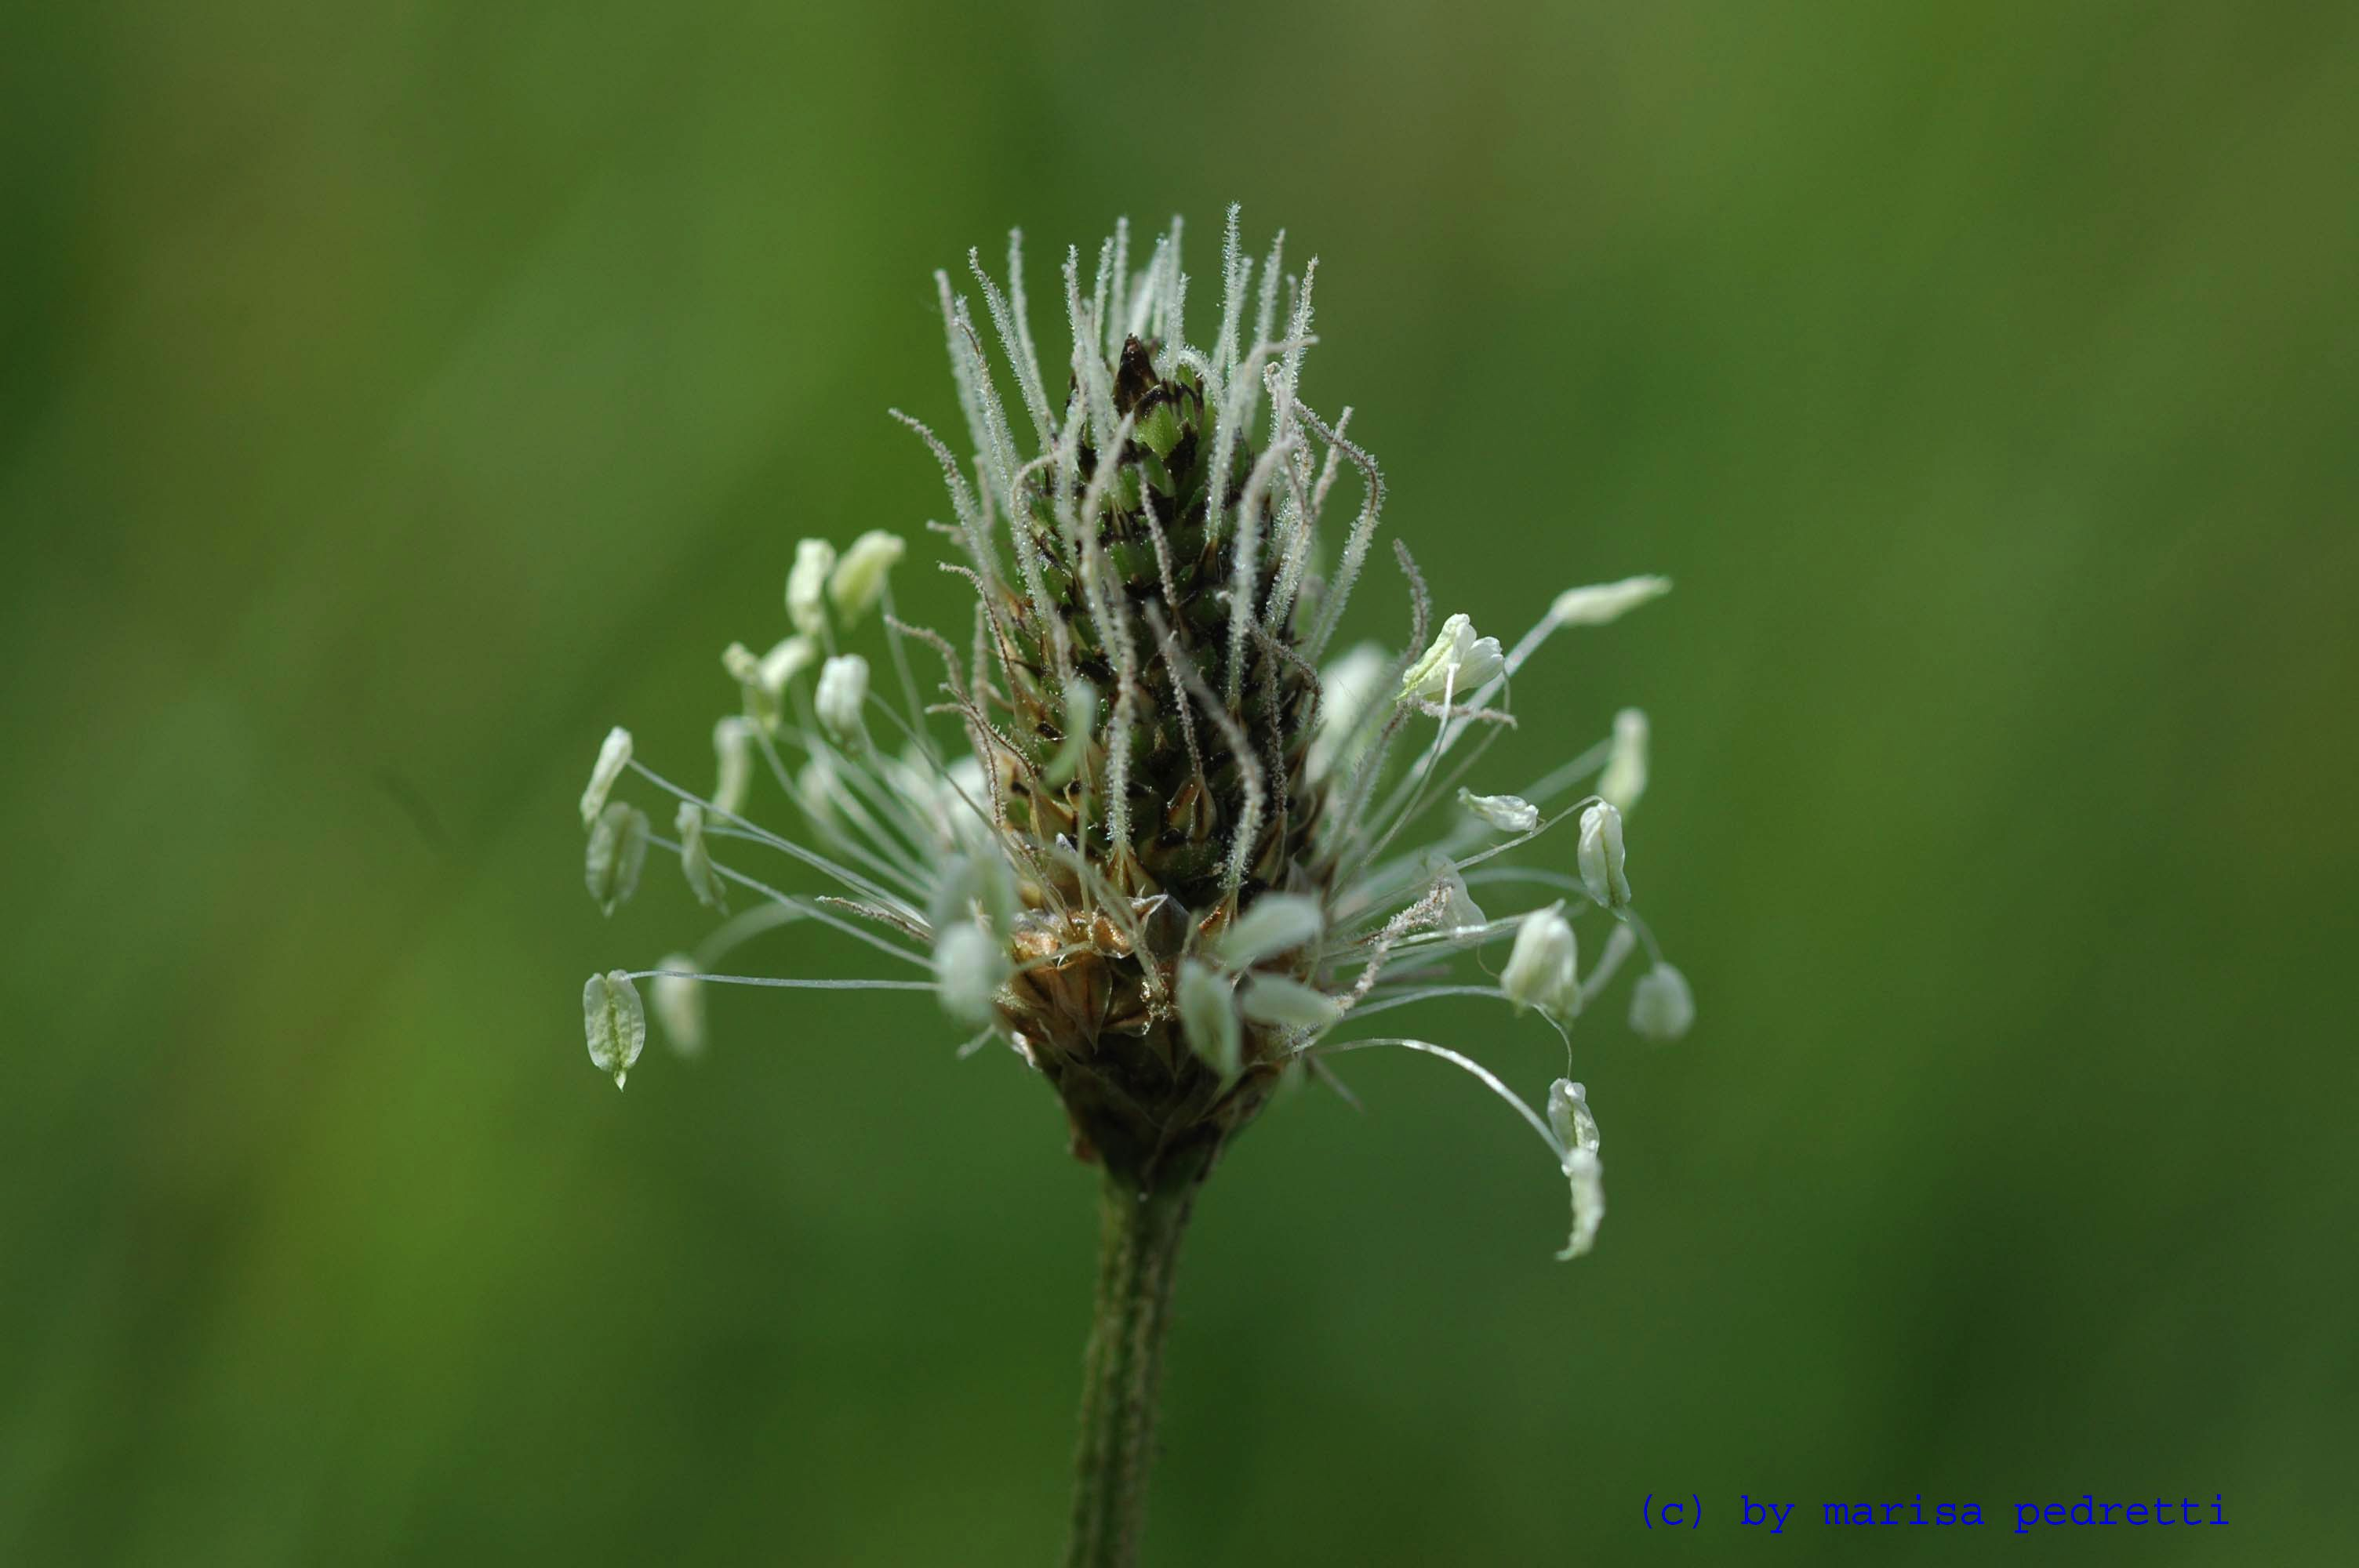 Trampel- oder einfach Pfade. Ob Spitz- oder Breitwegerich, sammeln Sie jeweils das Kraut, also der oberirdische Teil der Pflanze zur Blütenzeit.